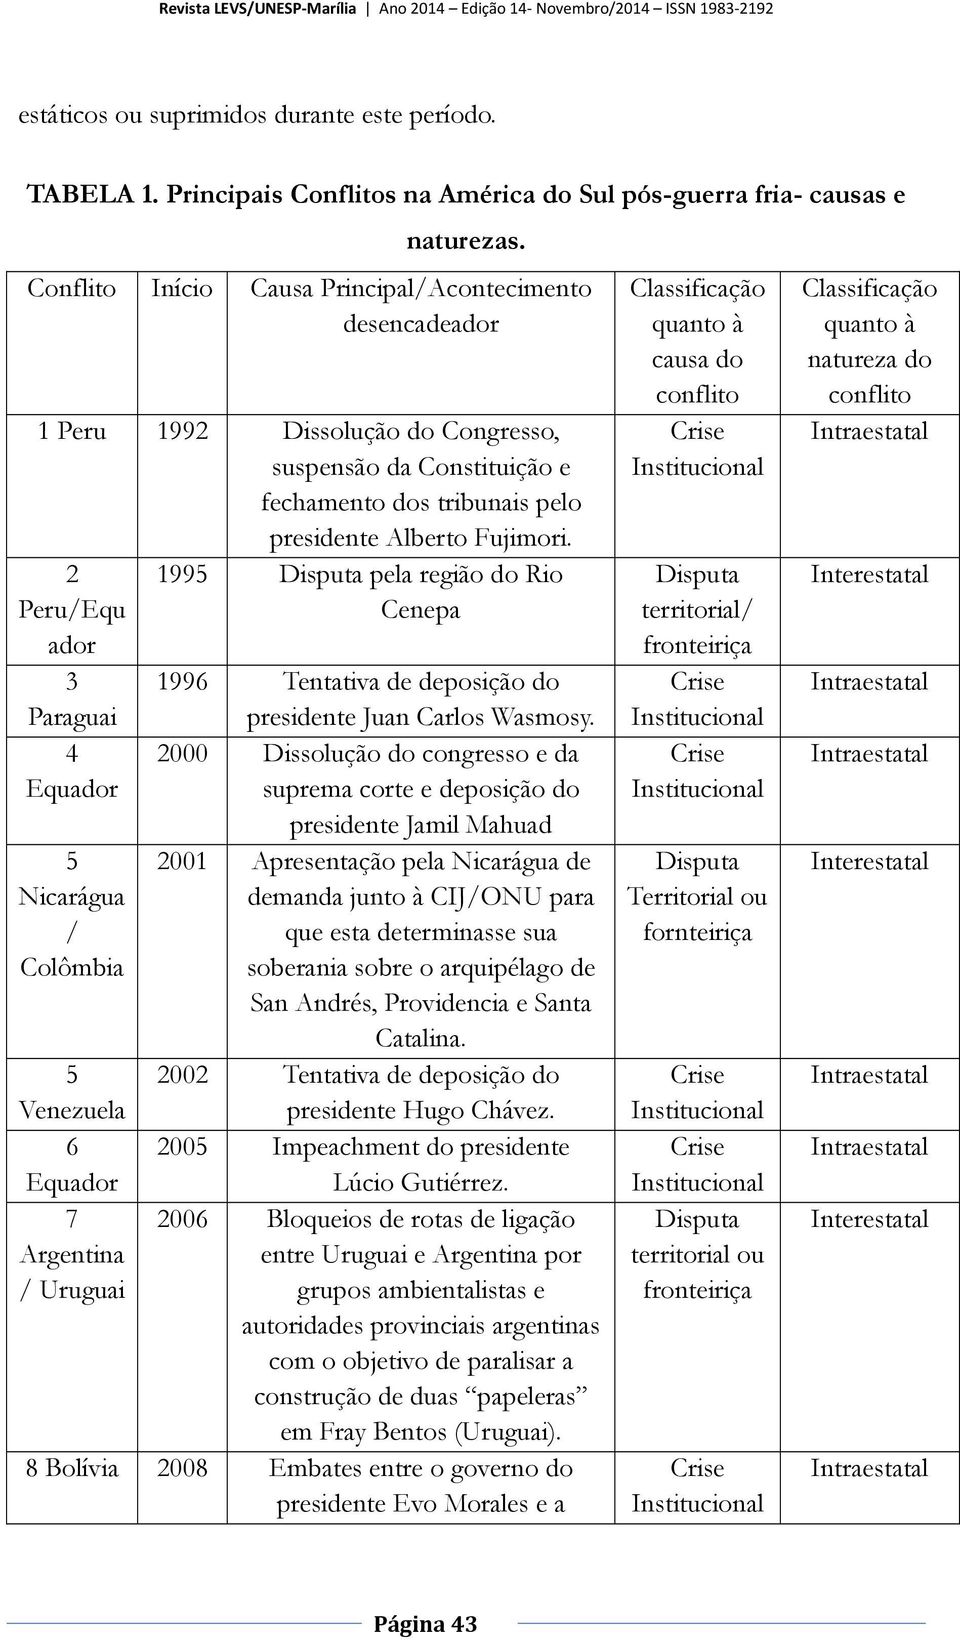 Conflito Início Causa Principal/Acontecimento desencadeador 1 Peru 1992 Dissolução do Congresso, suspensão da Constituição e fechamento dos tribunais pelo presidente Alberto Fujimori.